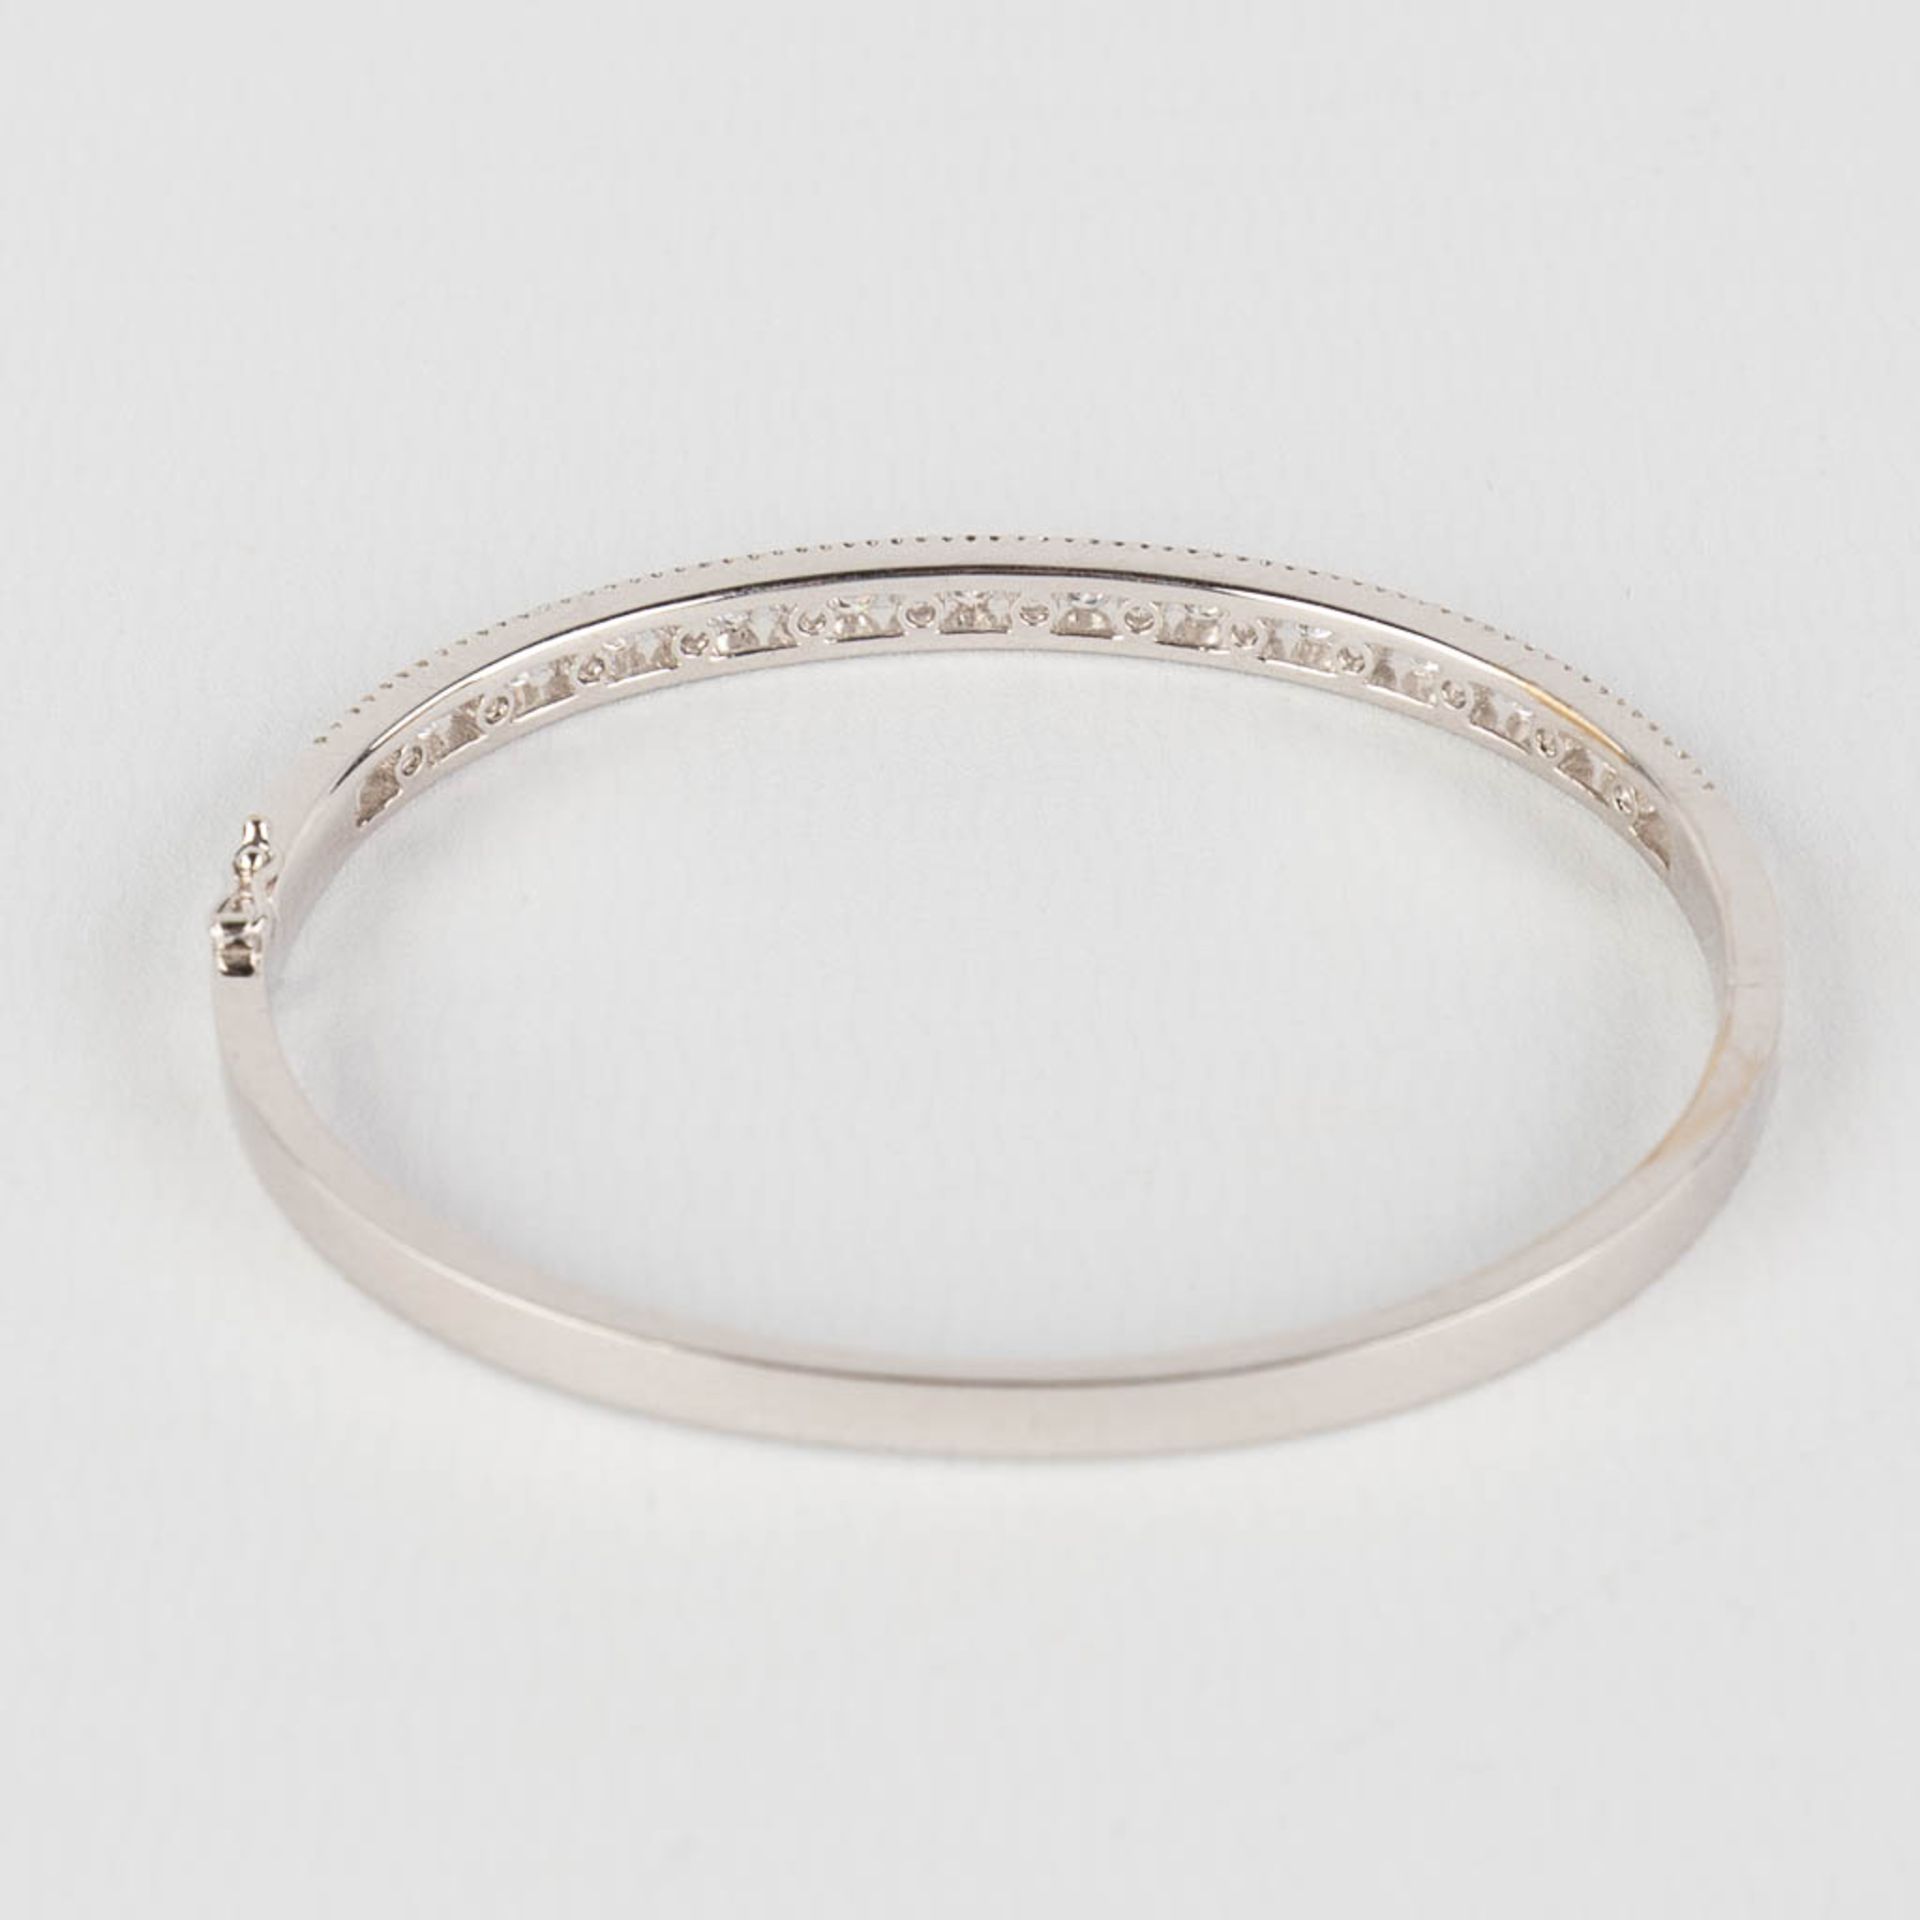 A bracelet, 18kt white gold with brilliants, appr. 2,18ct. 20,41g. - Bild 5 aus 9